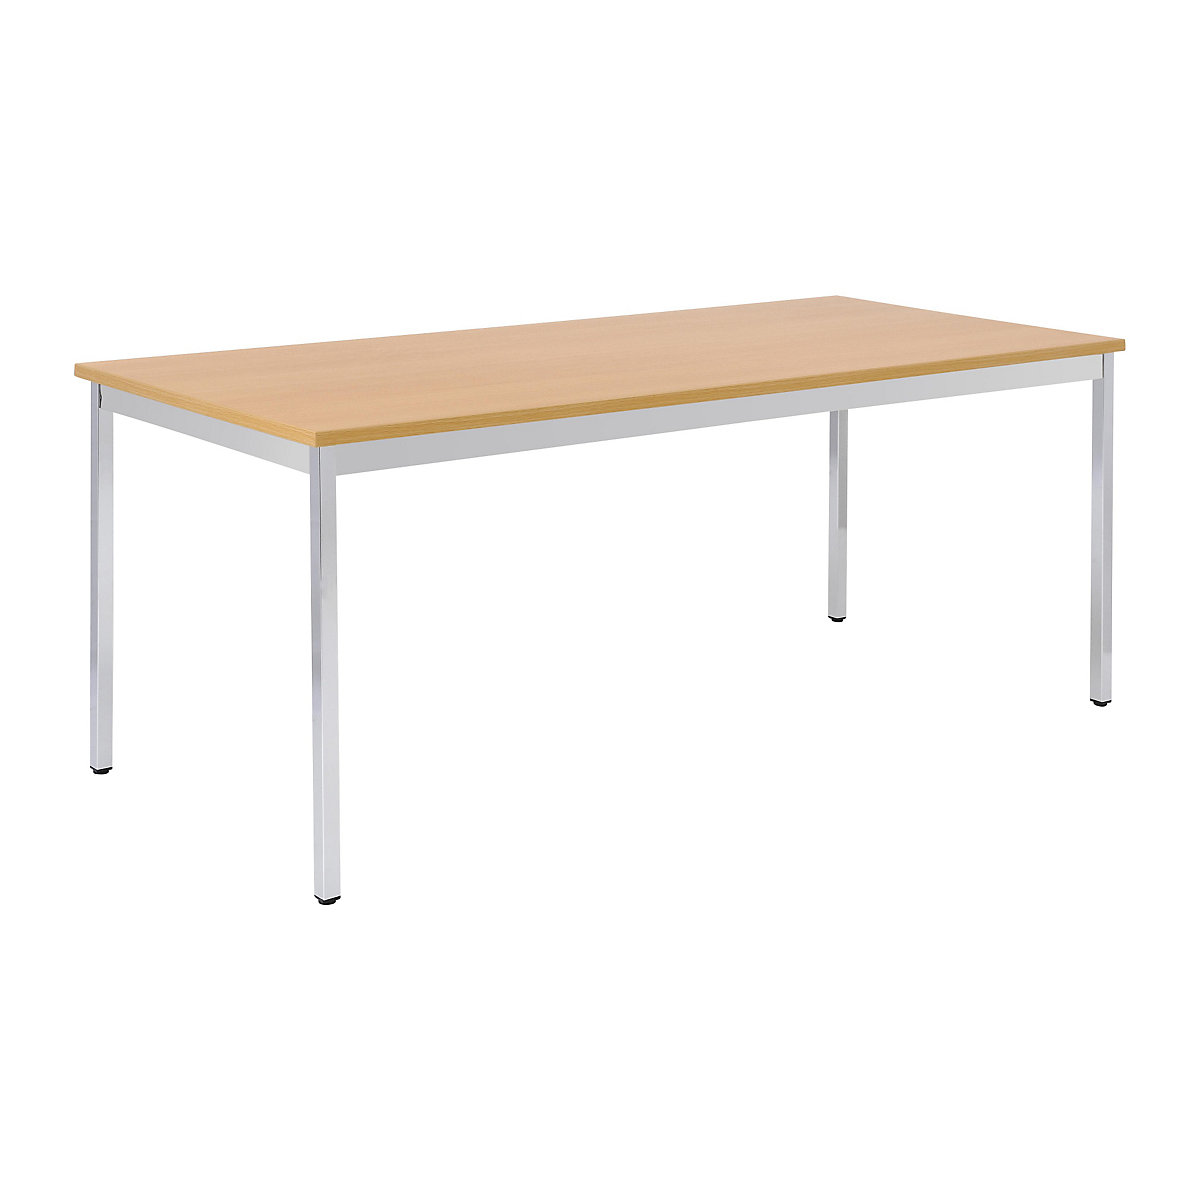 Víceúčelový stůl – eurokraft basic, obdélníkový tvar, š x v 1400 x 740 mm, hloubka 700 mm, deska v bukovém dekoru, podstavec pochromovaný-15